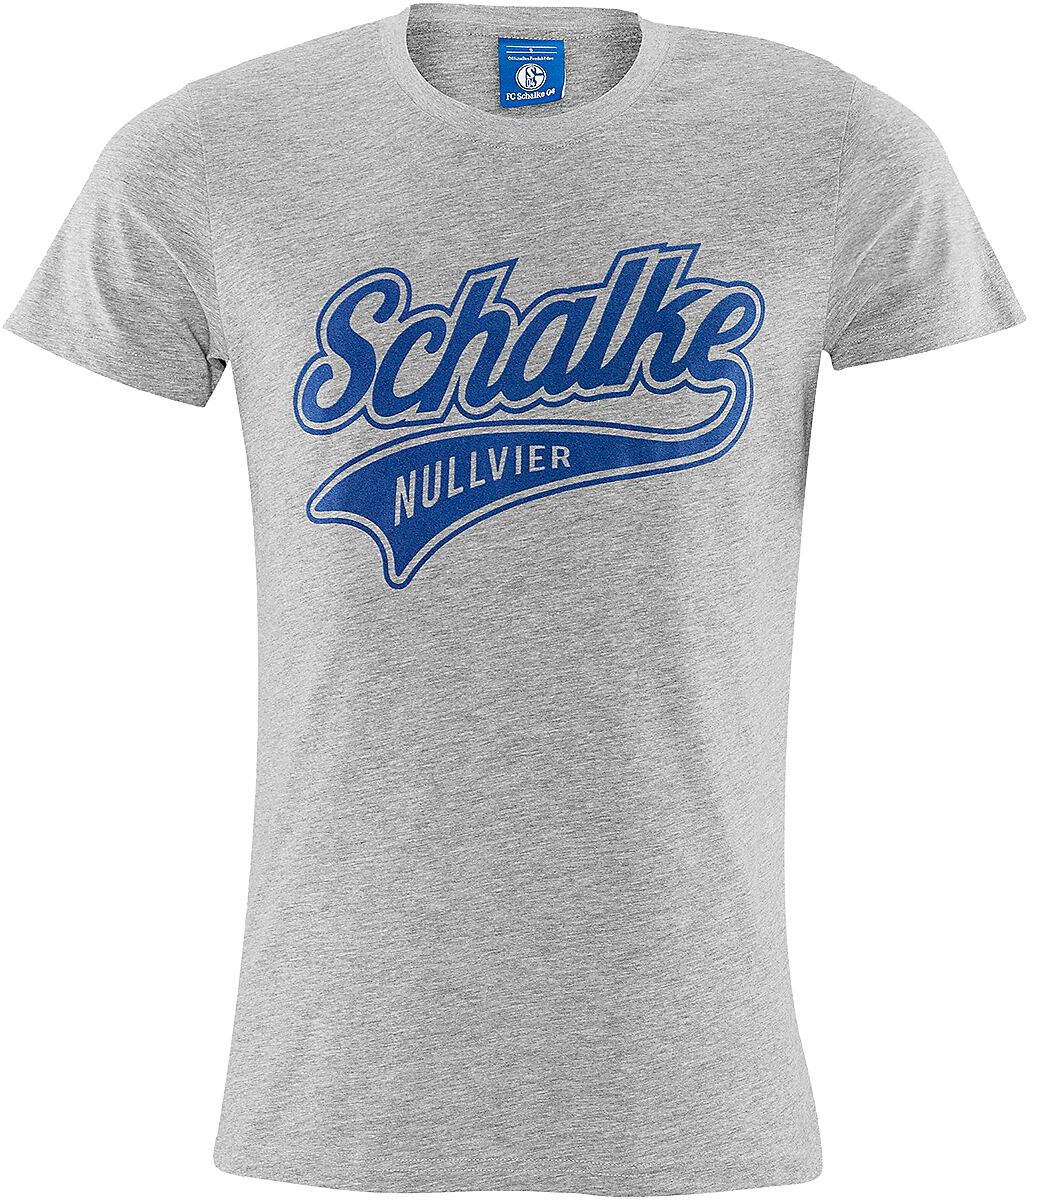 FC Schalke 04 T-Shirt - Schalke - S - für Männer - Größe S - grau